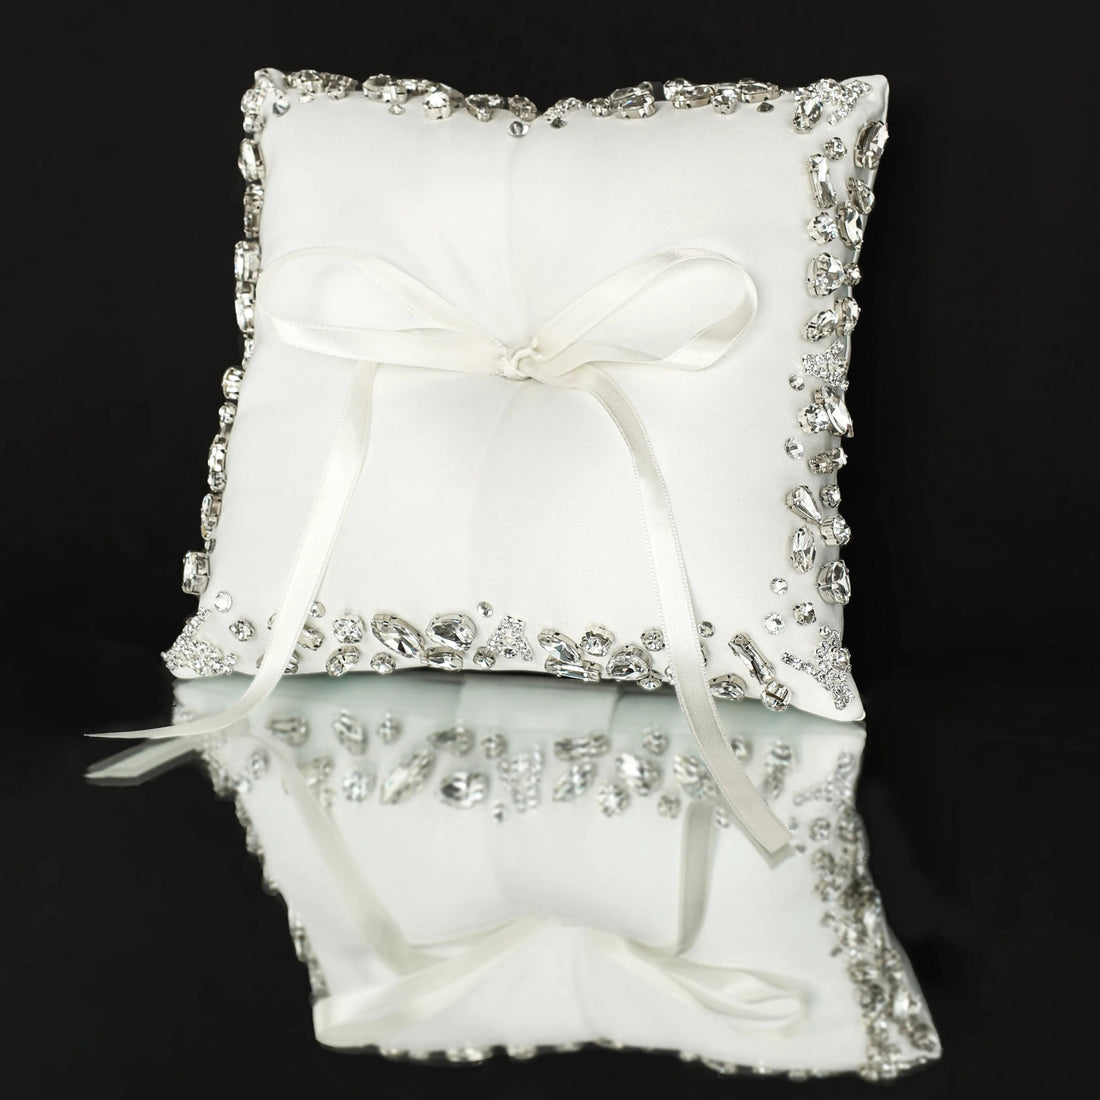 Wedding Pillow For Rings In White - ELENA HONCH